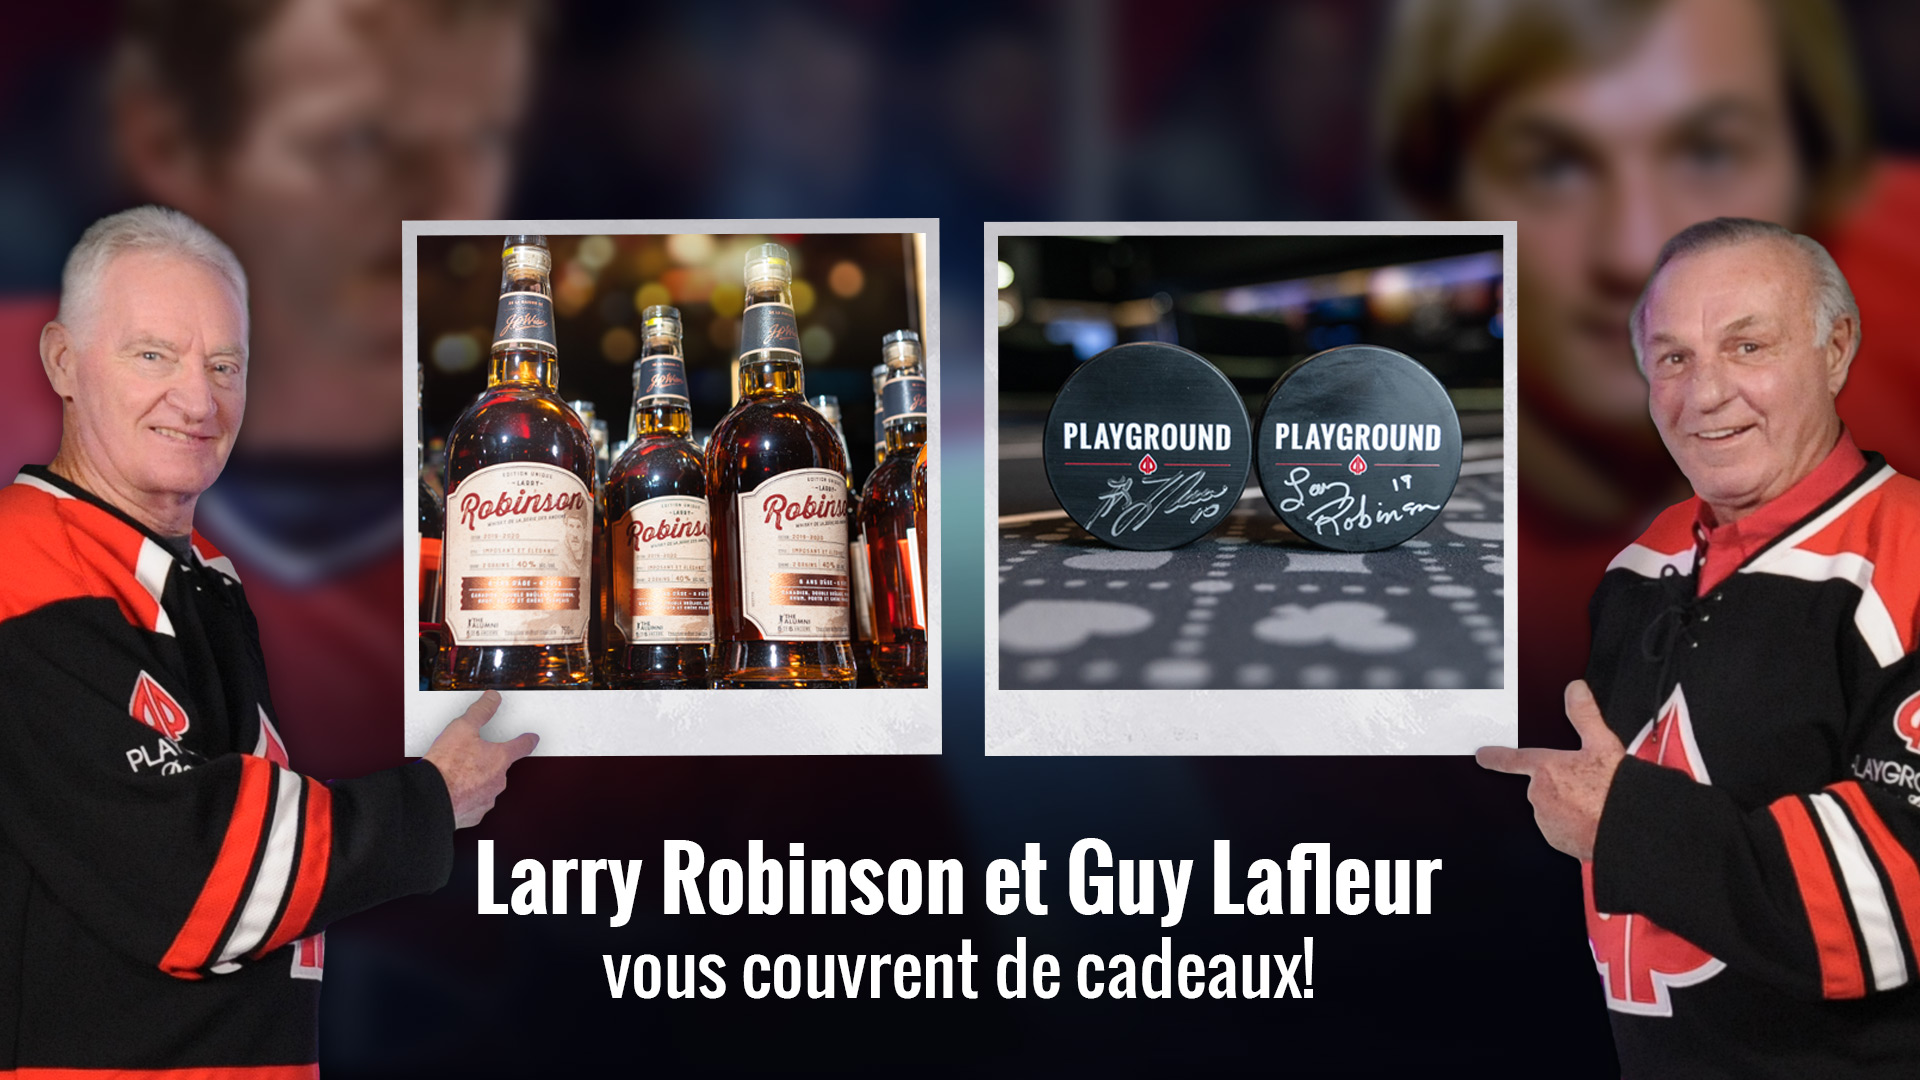 Larry Robinson et Guy Lafleur vous couvrent de cadeaux!